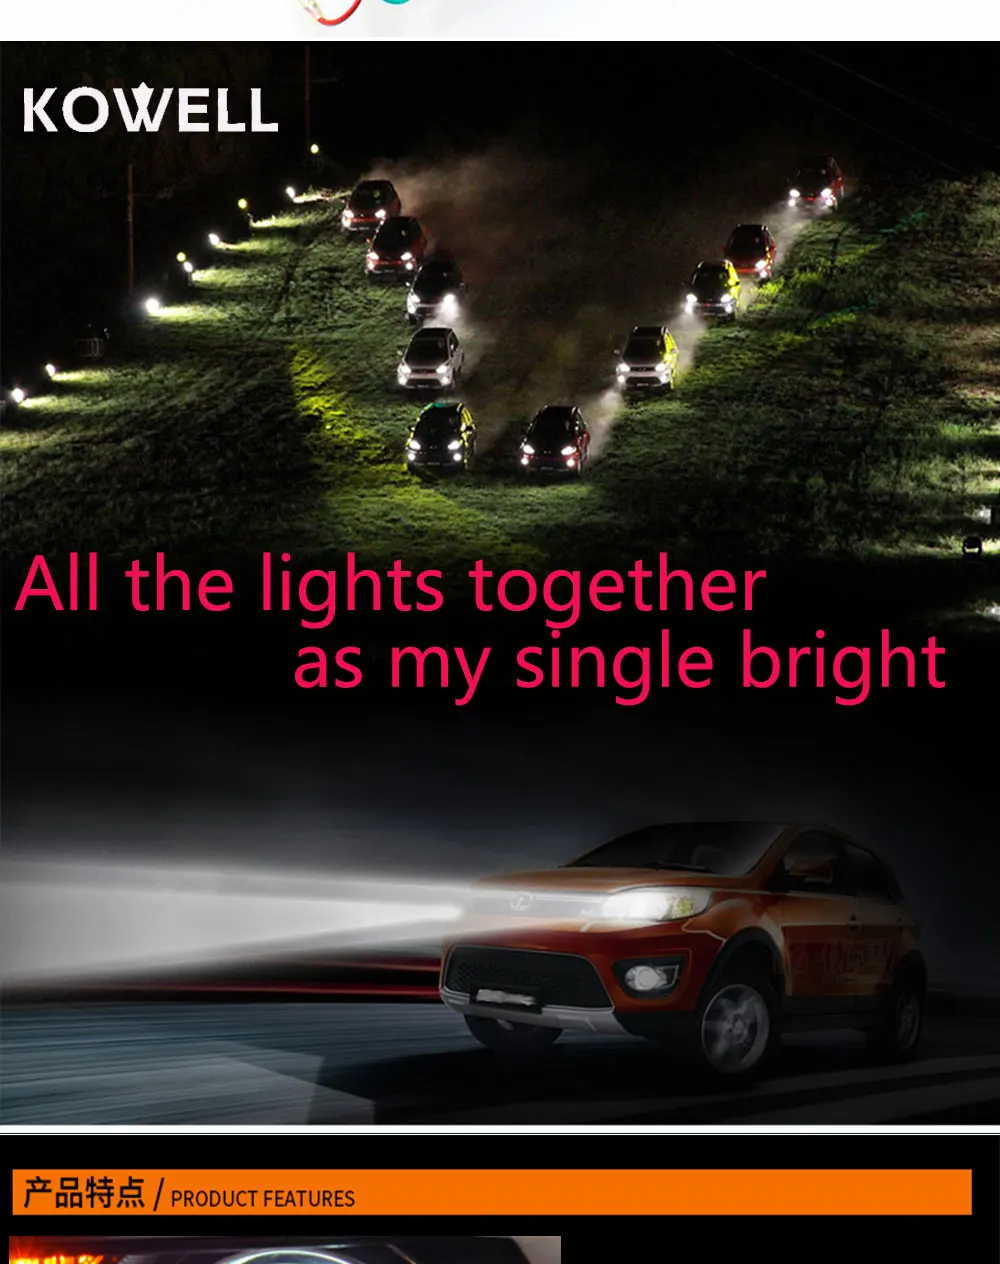 Kowell Автомобиль Стайлинг для Audi A4 B8 Фары для автомобиля 2009-2012 A4L светодиодные фары LED DRL bi xenon объектив высокого низкая луч парковка